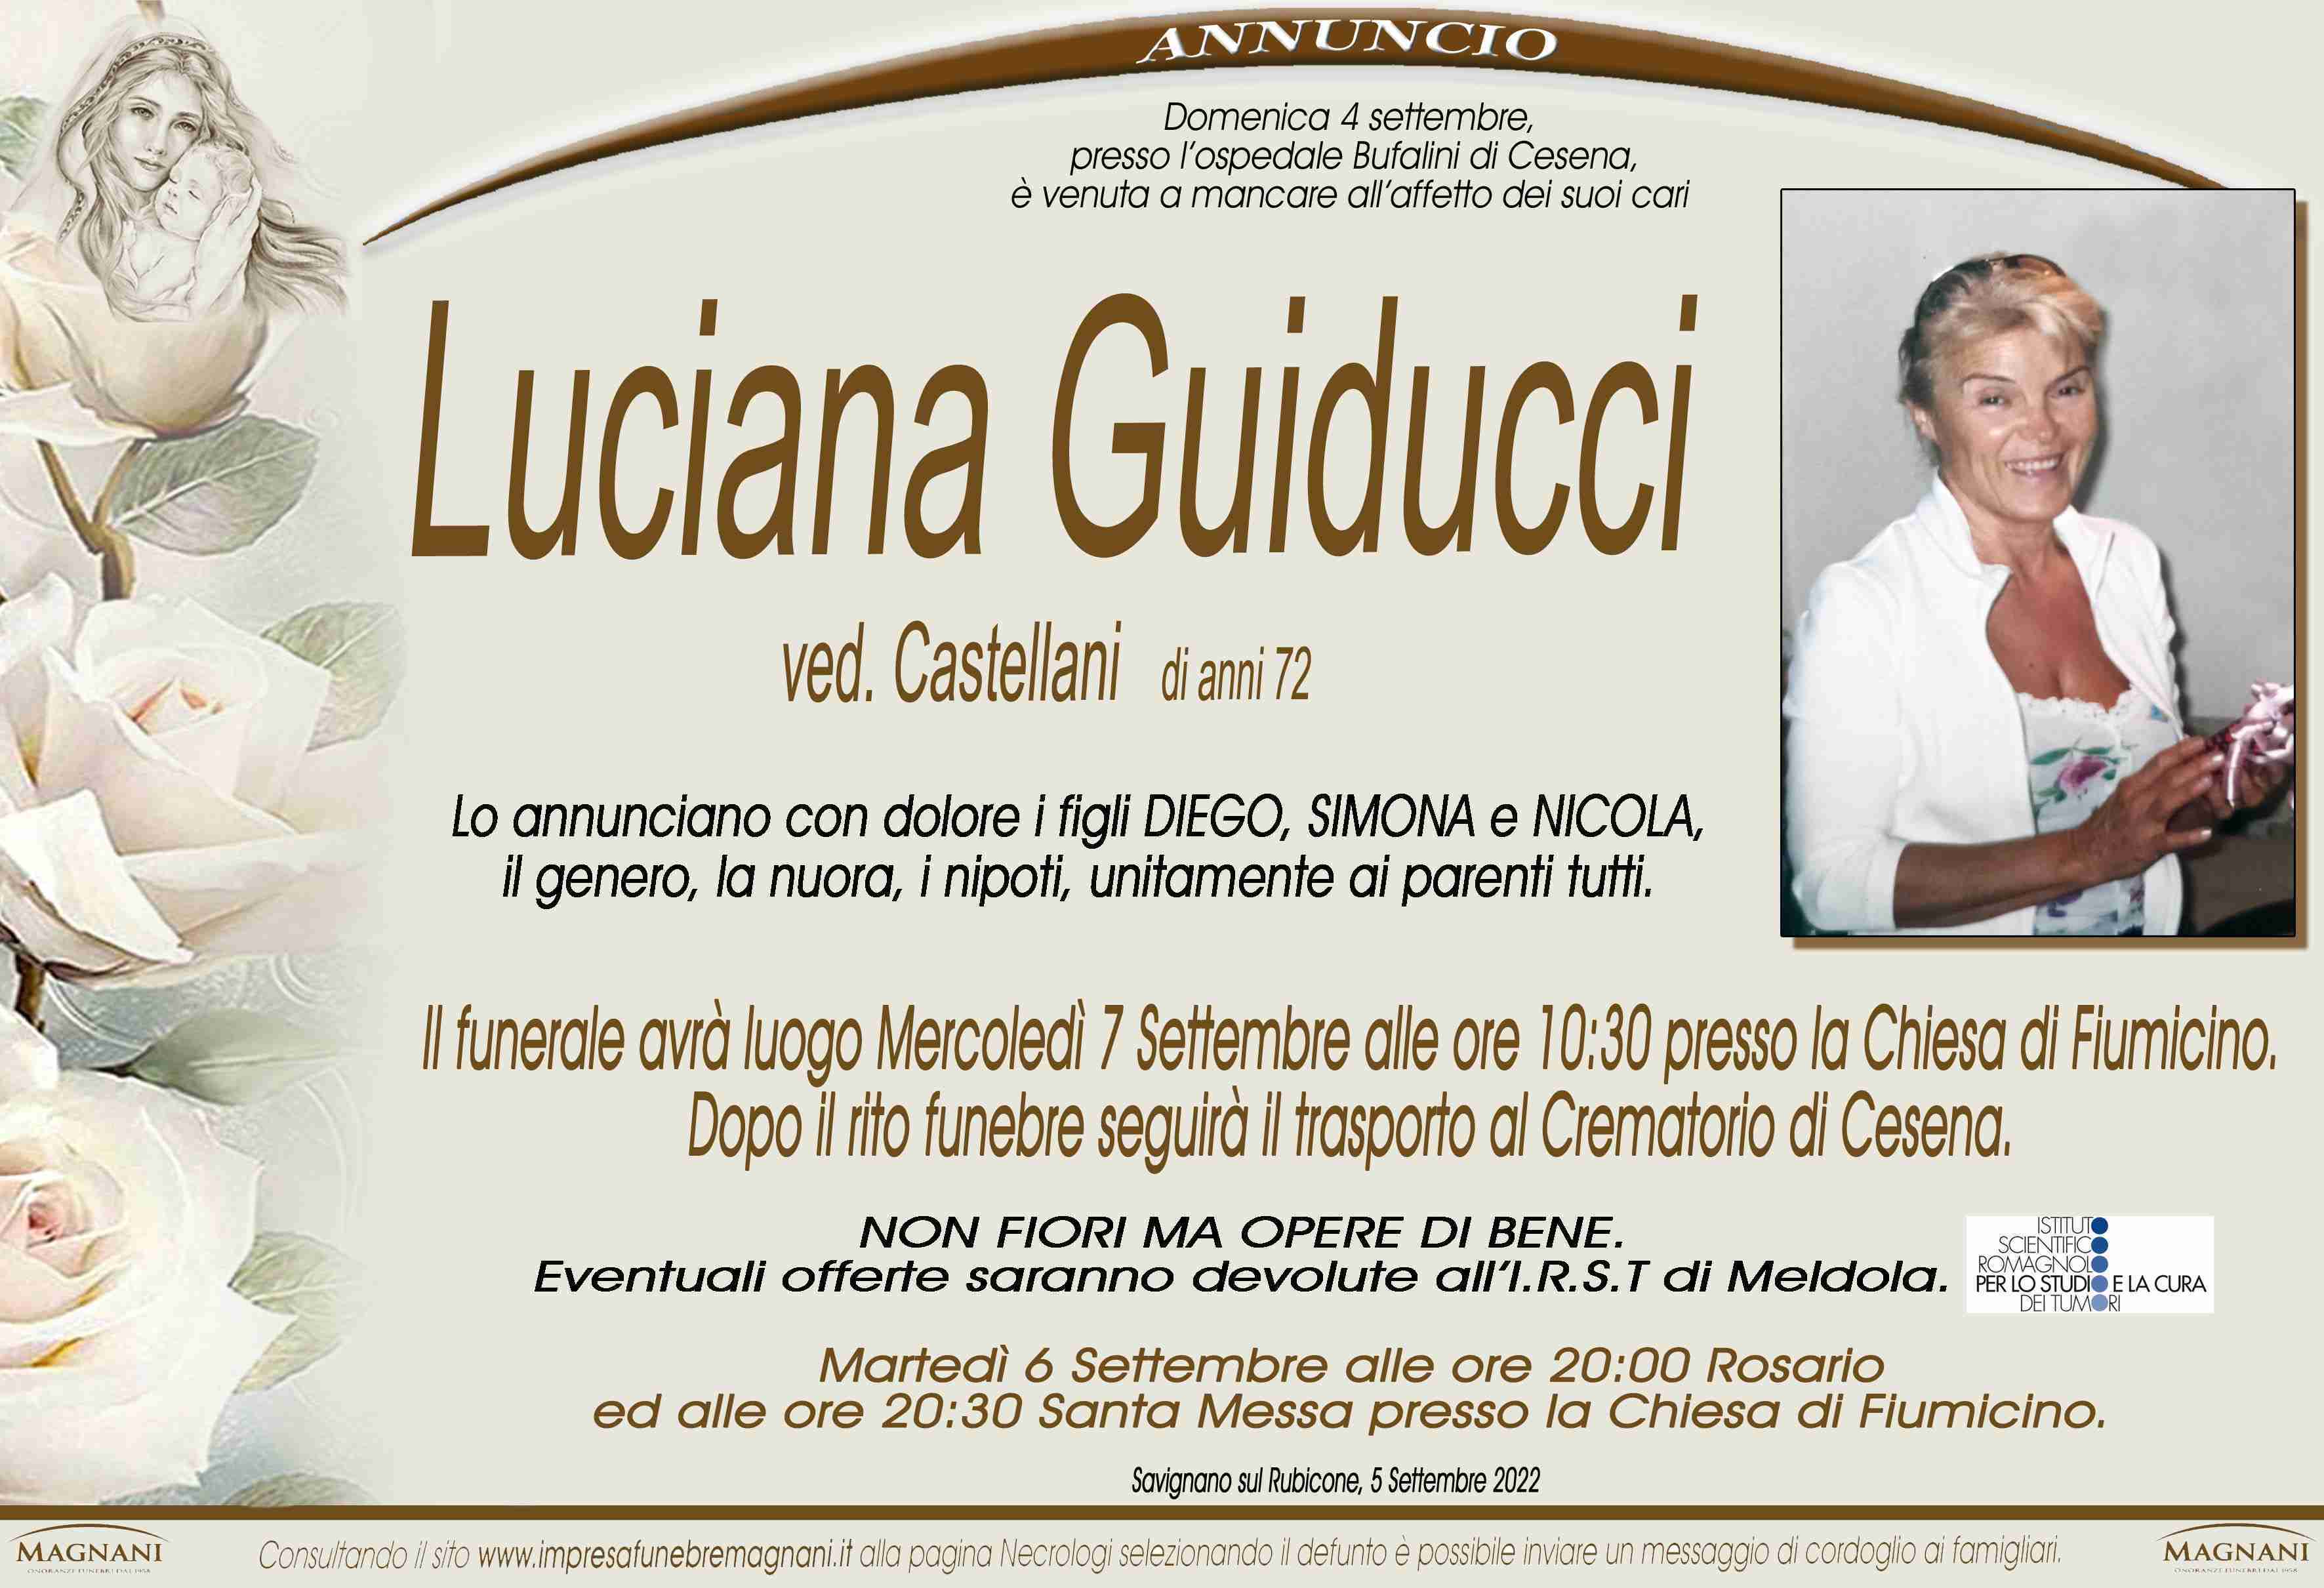 Luciana Guiducci